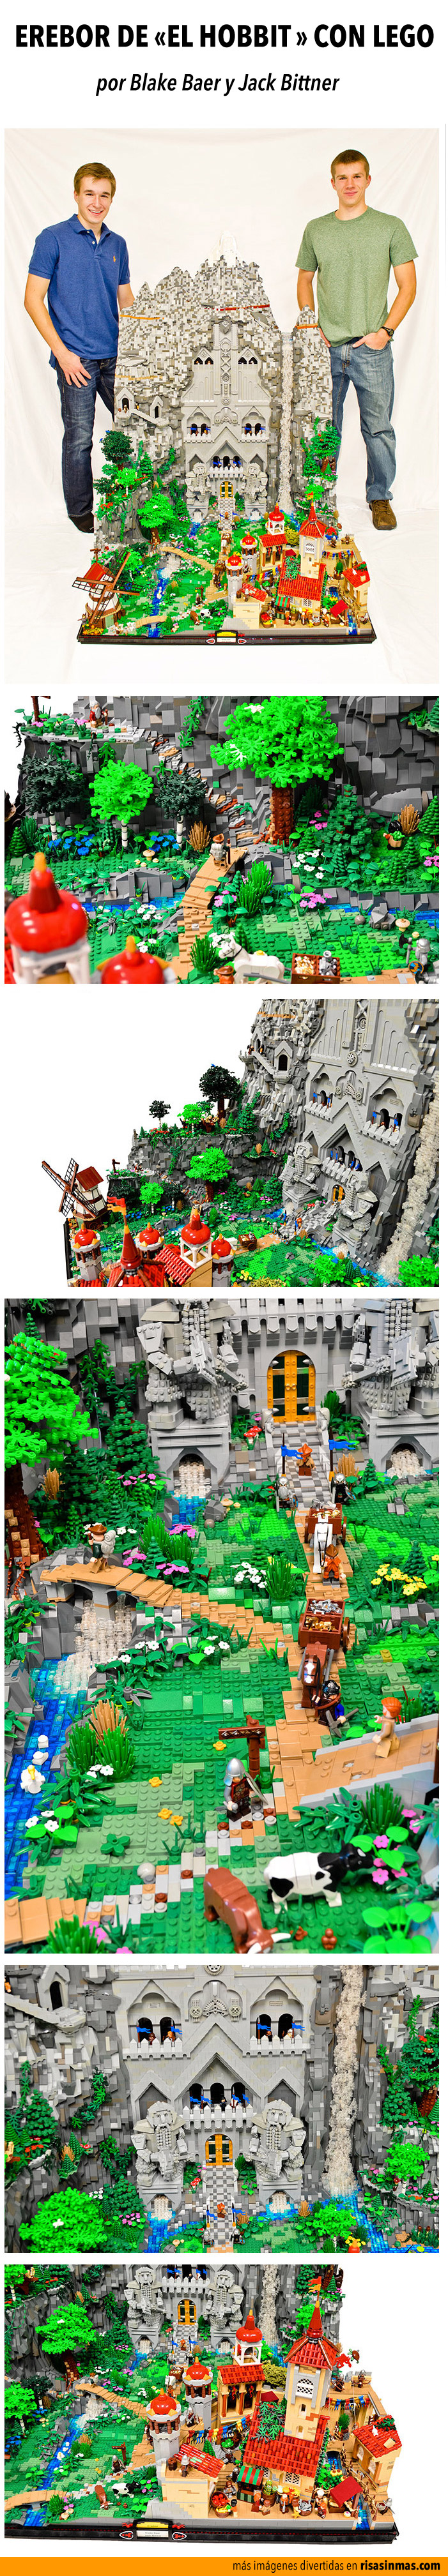 Erebor de "El Hobbit" recreada con LEGO